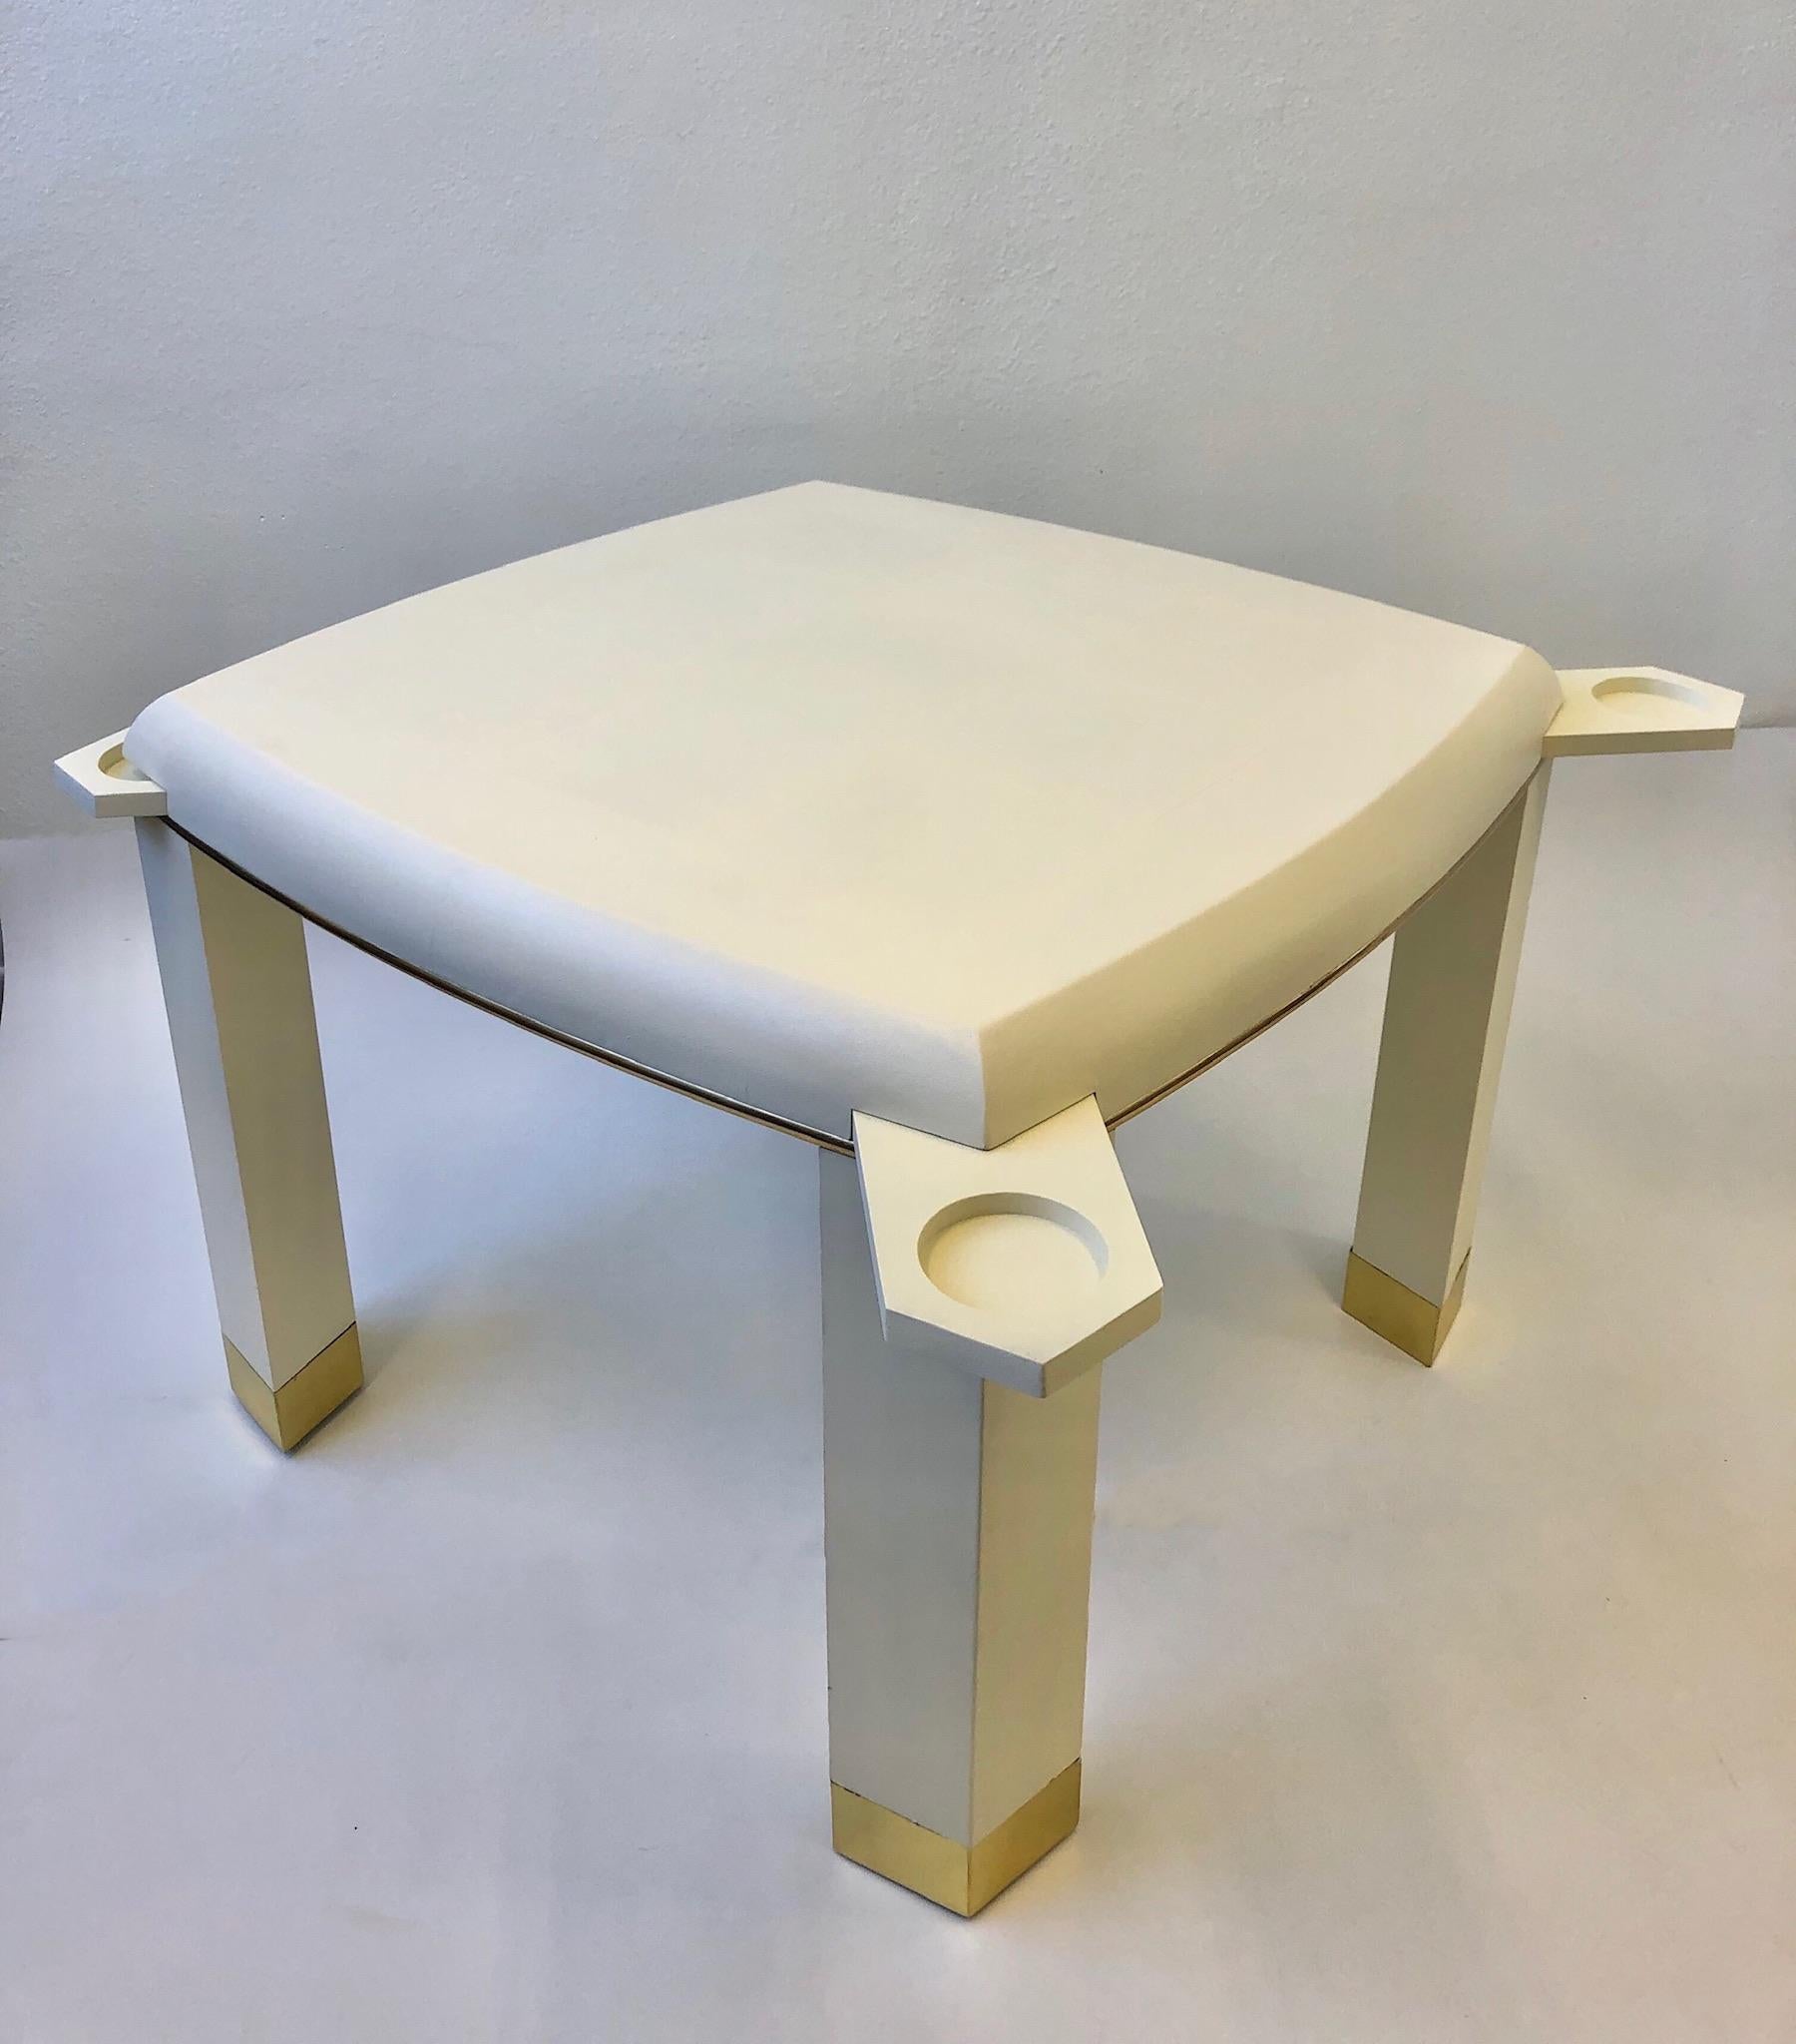 Une table de jeu glamour avec un support caché pour les boissons ou les cendriers, dans le style du célèbre designer Karl Springer des années 1980. La table est fabriquée en bois et recouverte d'un cuir blanc cassé gaufré par un serpent, avec des